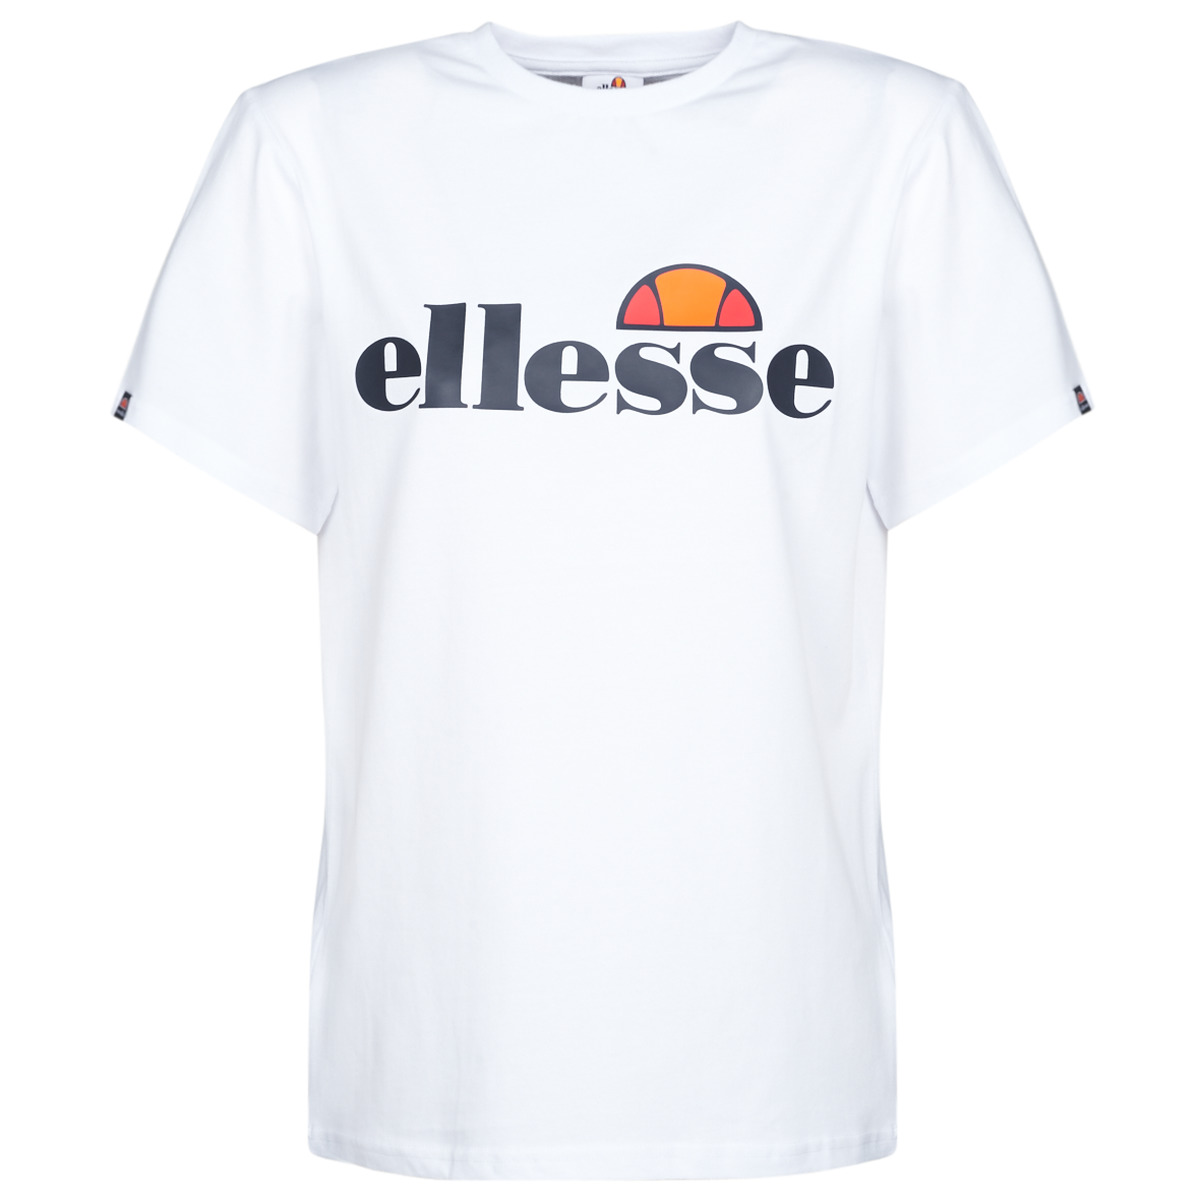 Abbigliamento Donna T-shirt maniche corte Ellesse ALBANY 